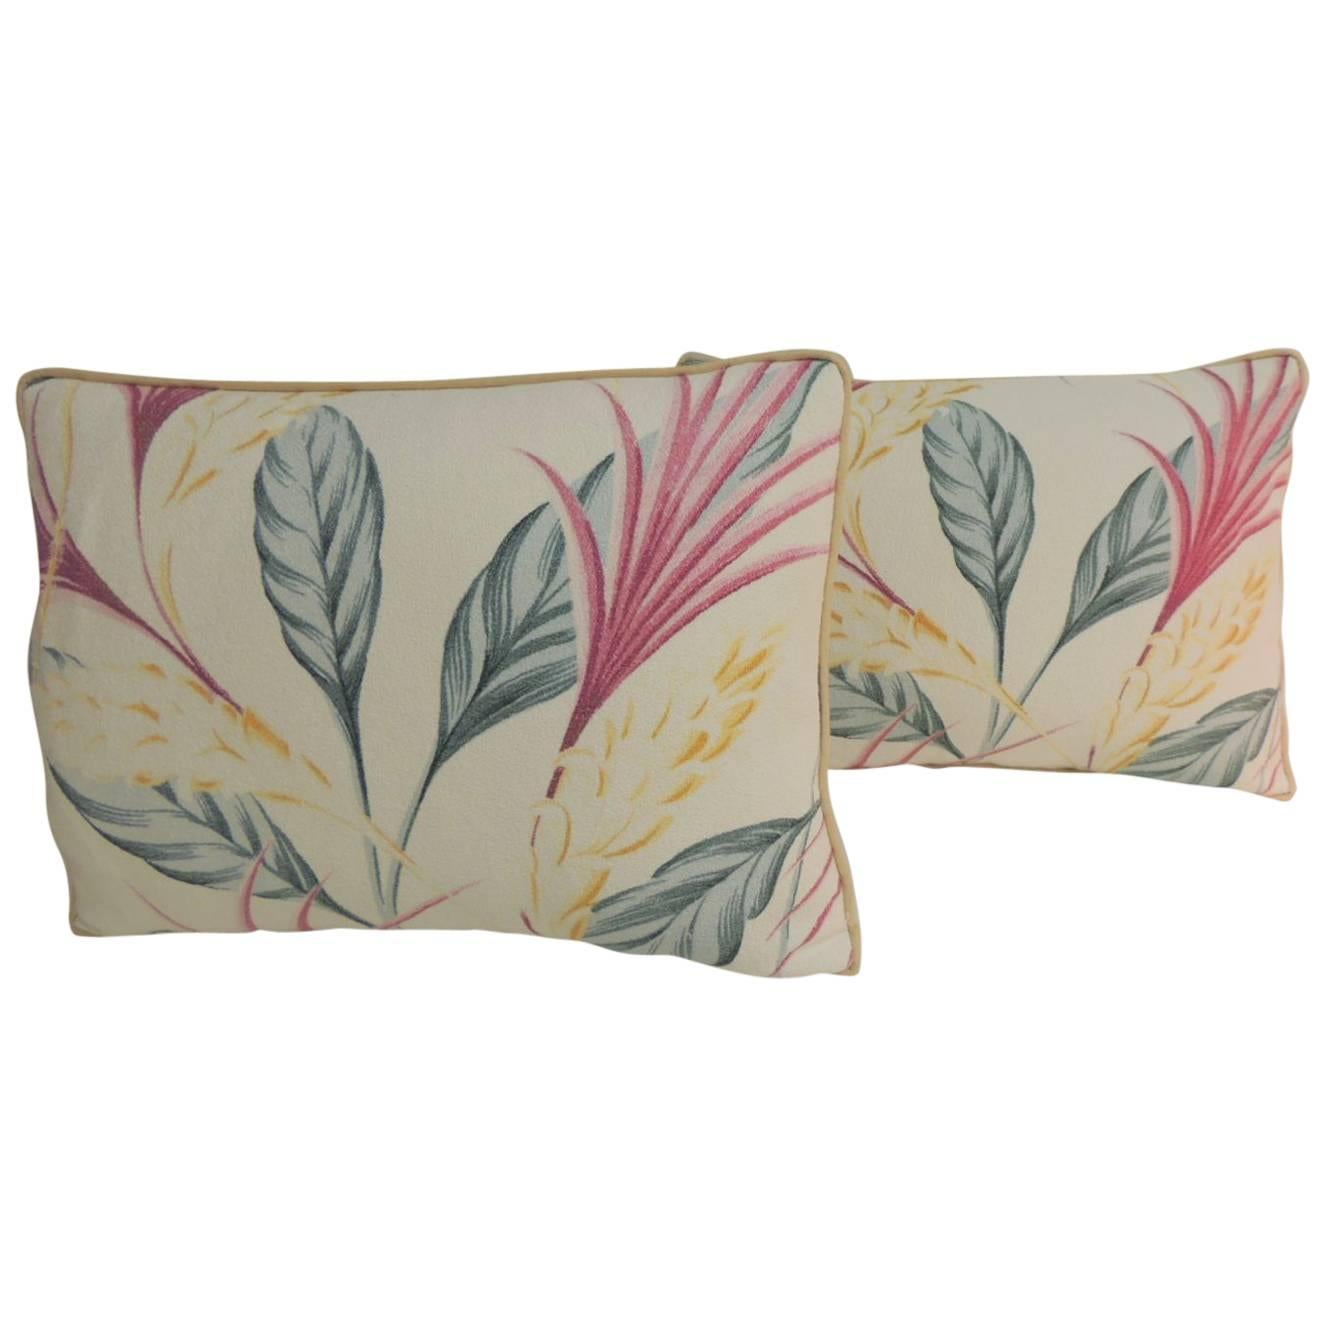 Vintage Yellow and Pink Barkcloth Decorative Lumbar Pillows For Sale